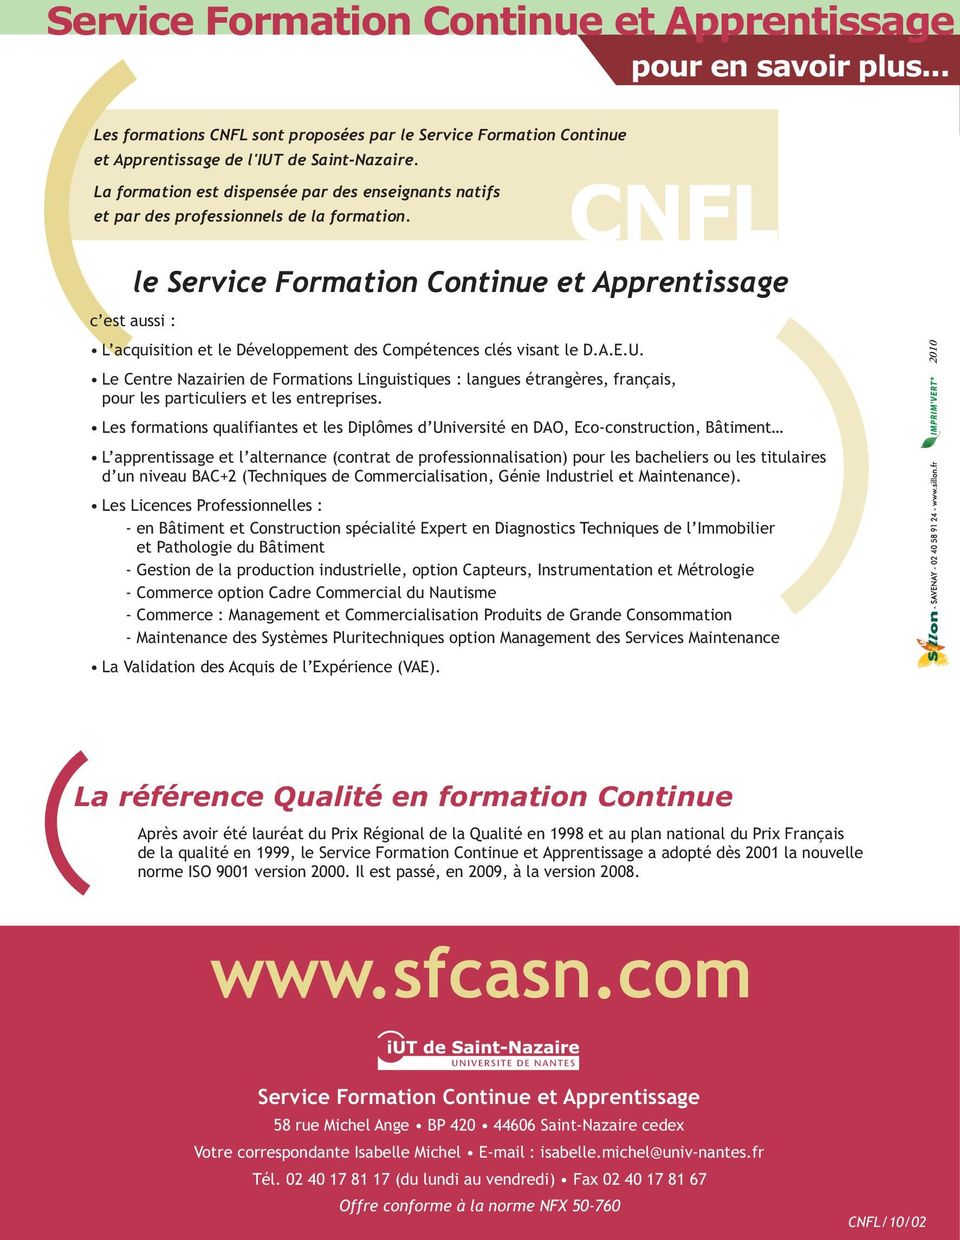 Le Centre Nazairien de Formations Linguistiques : langues étrangères, français, pour les particuliers et les entreprises.